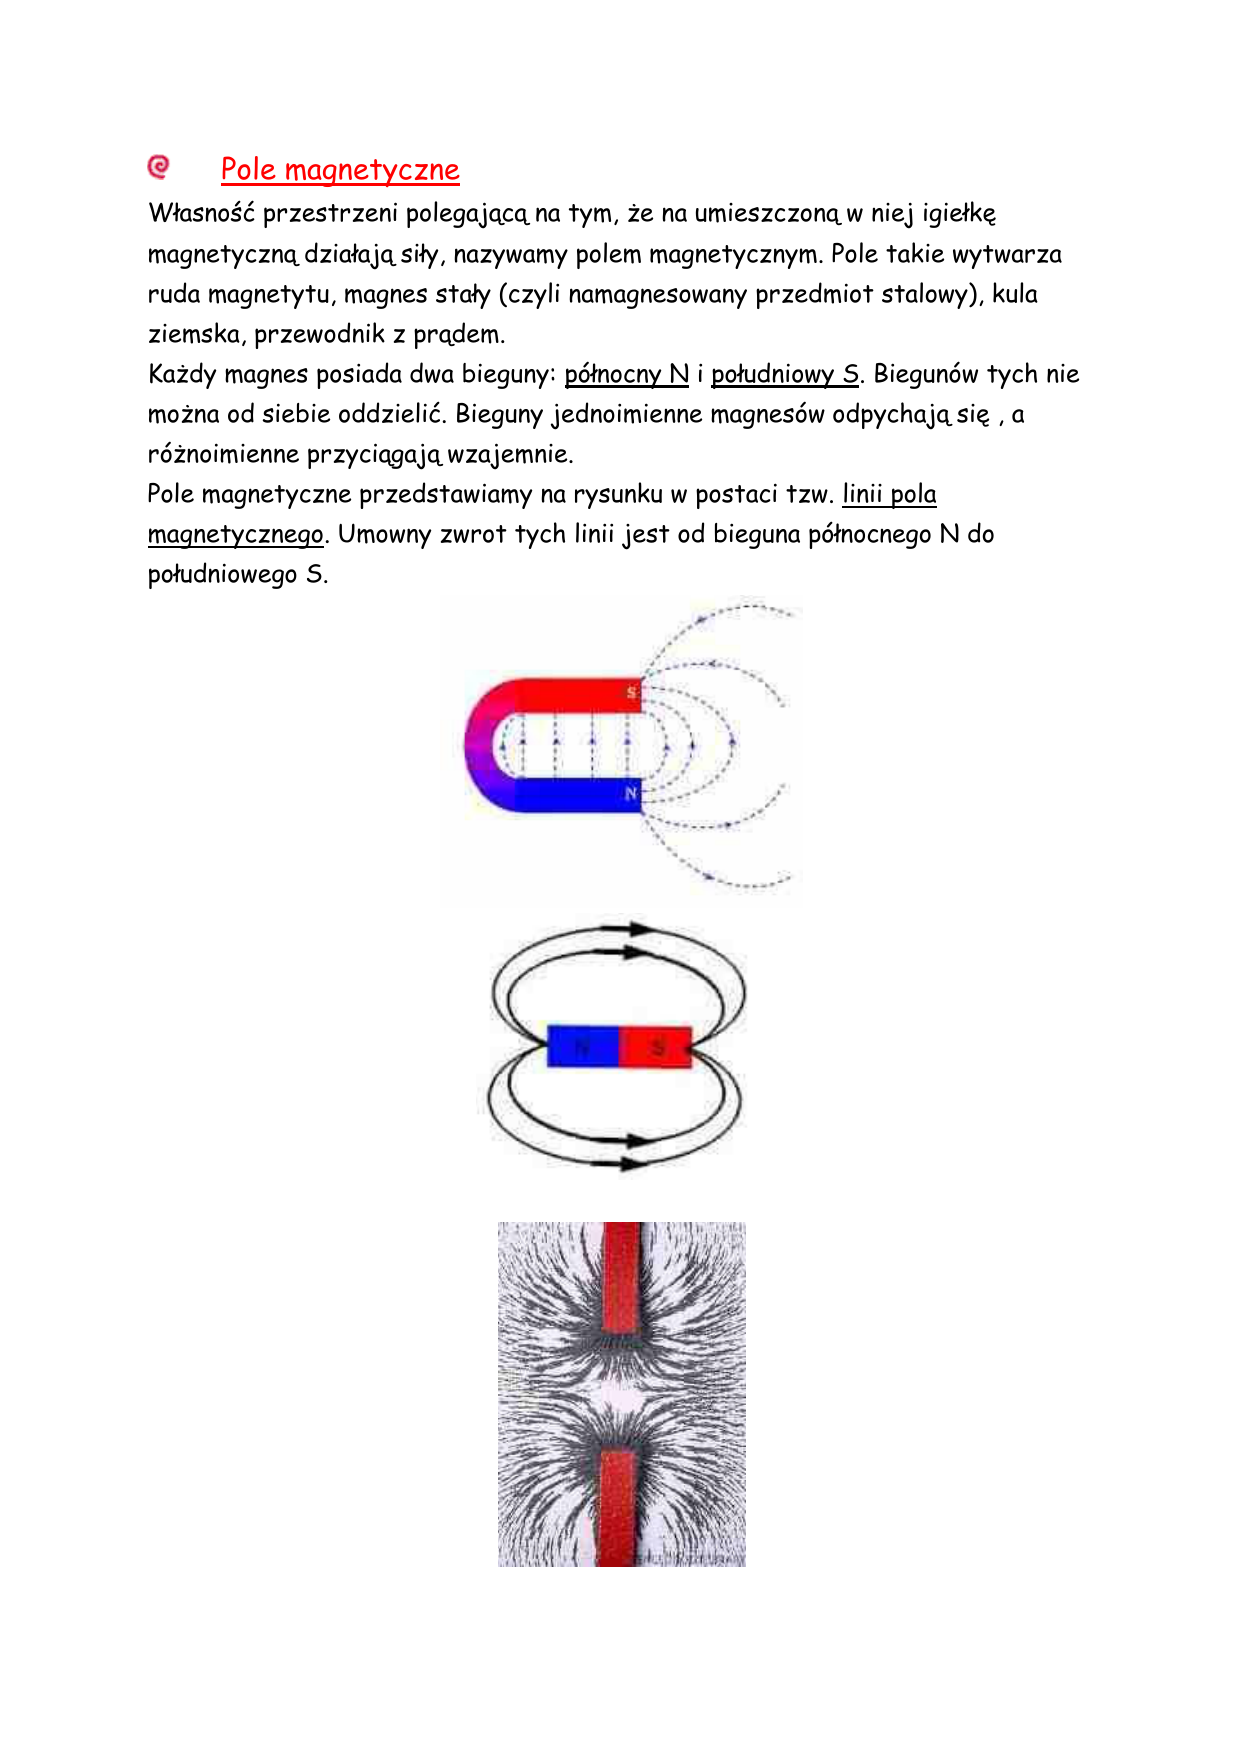 Sprawdzian Z Fizyki Z Magnetyzmu Pole magnetyczne